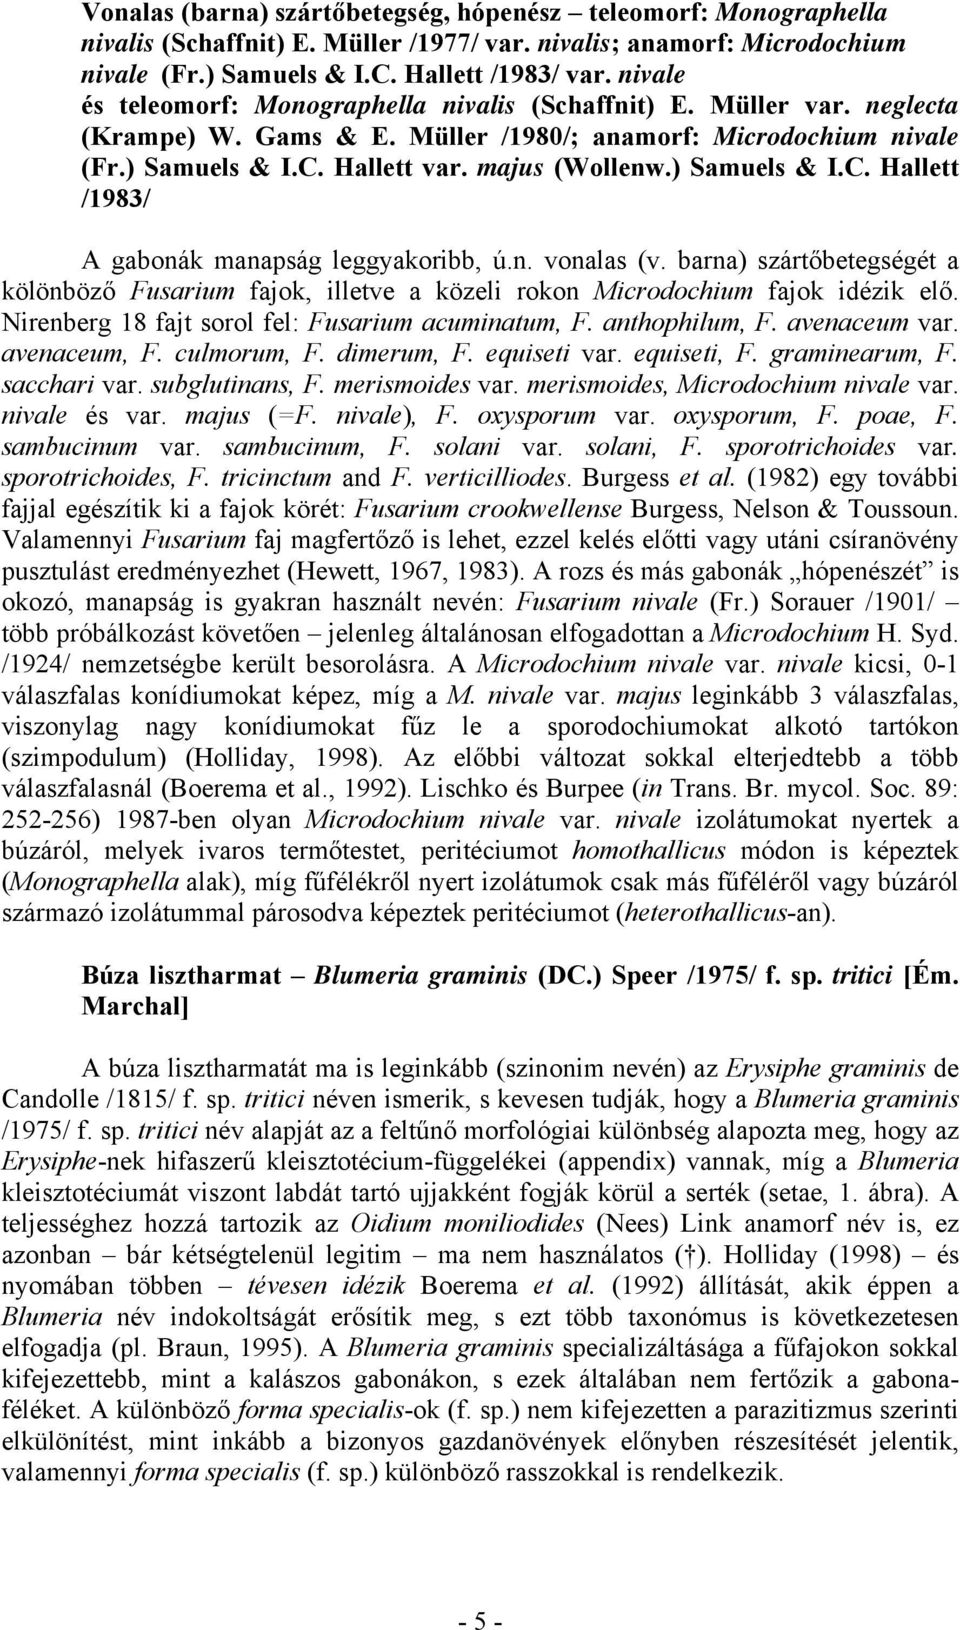 ) Samuels & I.C. Hallett /1983/ A gabonák manapság leggyakoribb, ú.n. vonalas (v. barna) szártőbetegségét a kölönböző Fusarium fajok, illetve a közeli rokon Microdochium fajok idézik elő.